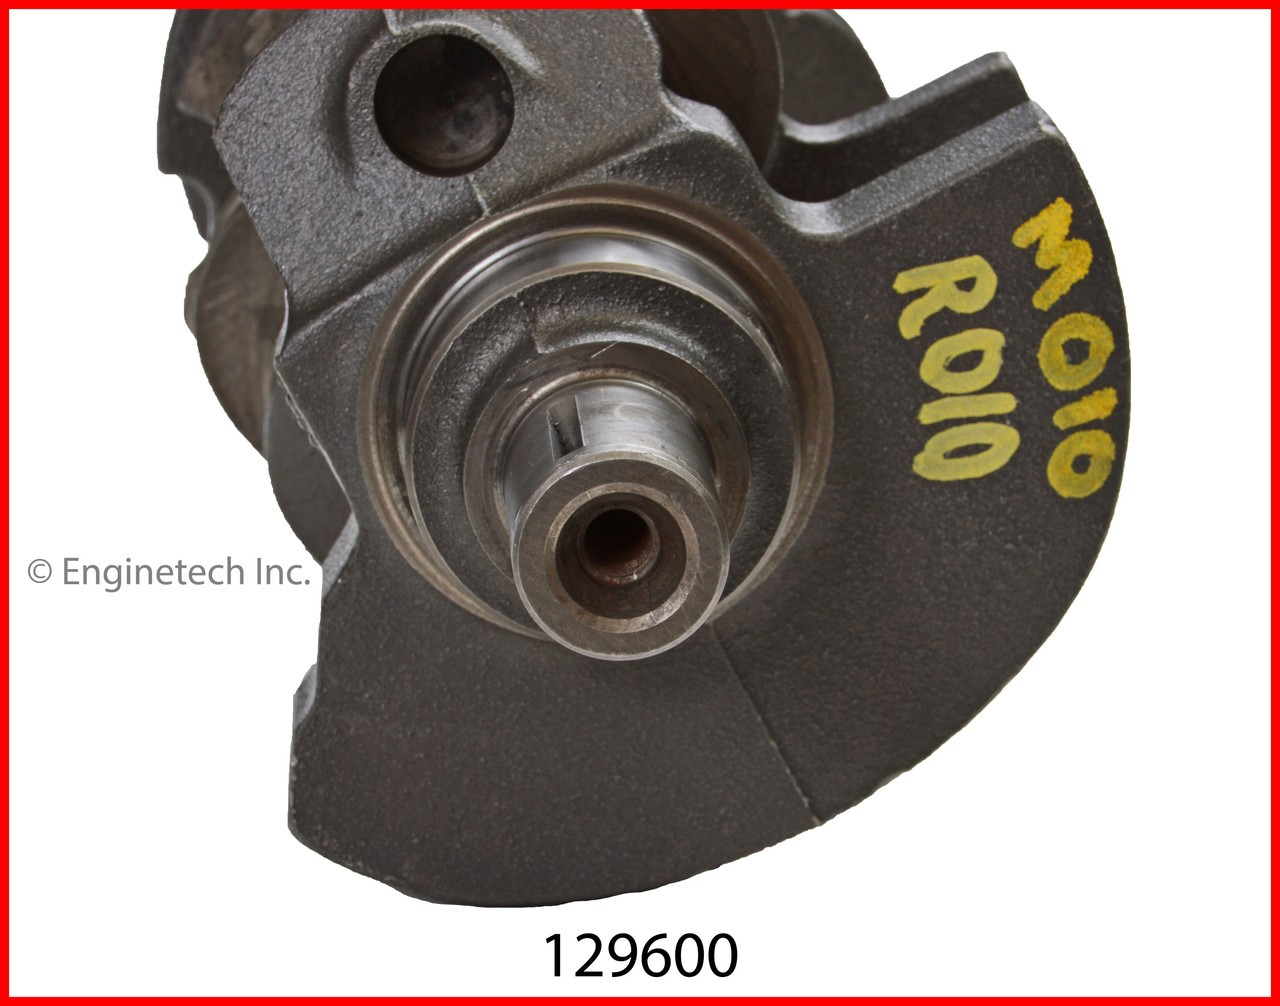 Crankshaft Kit - 2000 GMC Jimmy 4.3L (129600.E43)